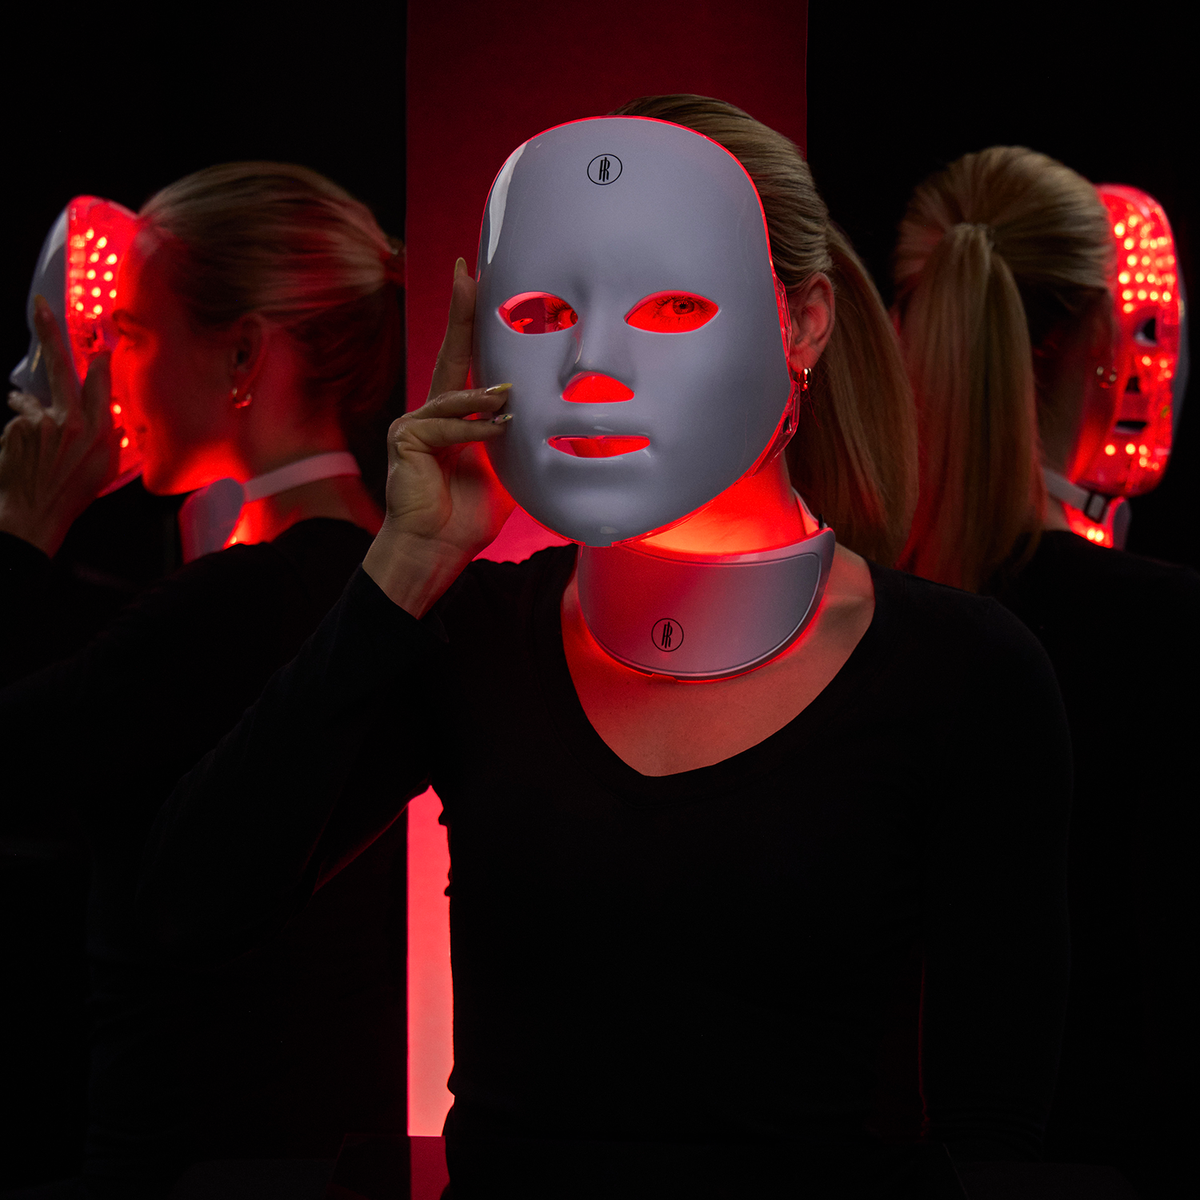 RegenaLight - #1 Wireless LED Light Therapy Mask